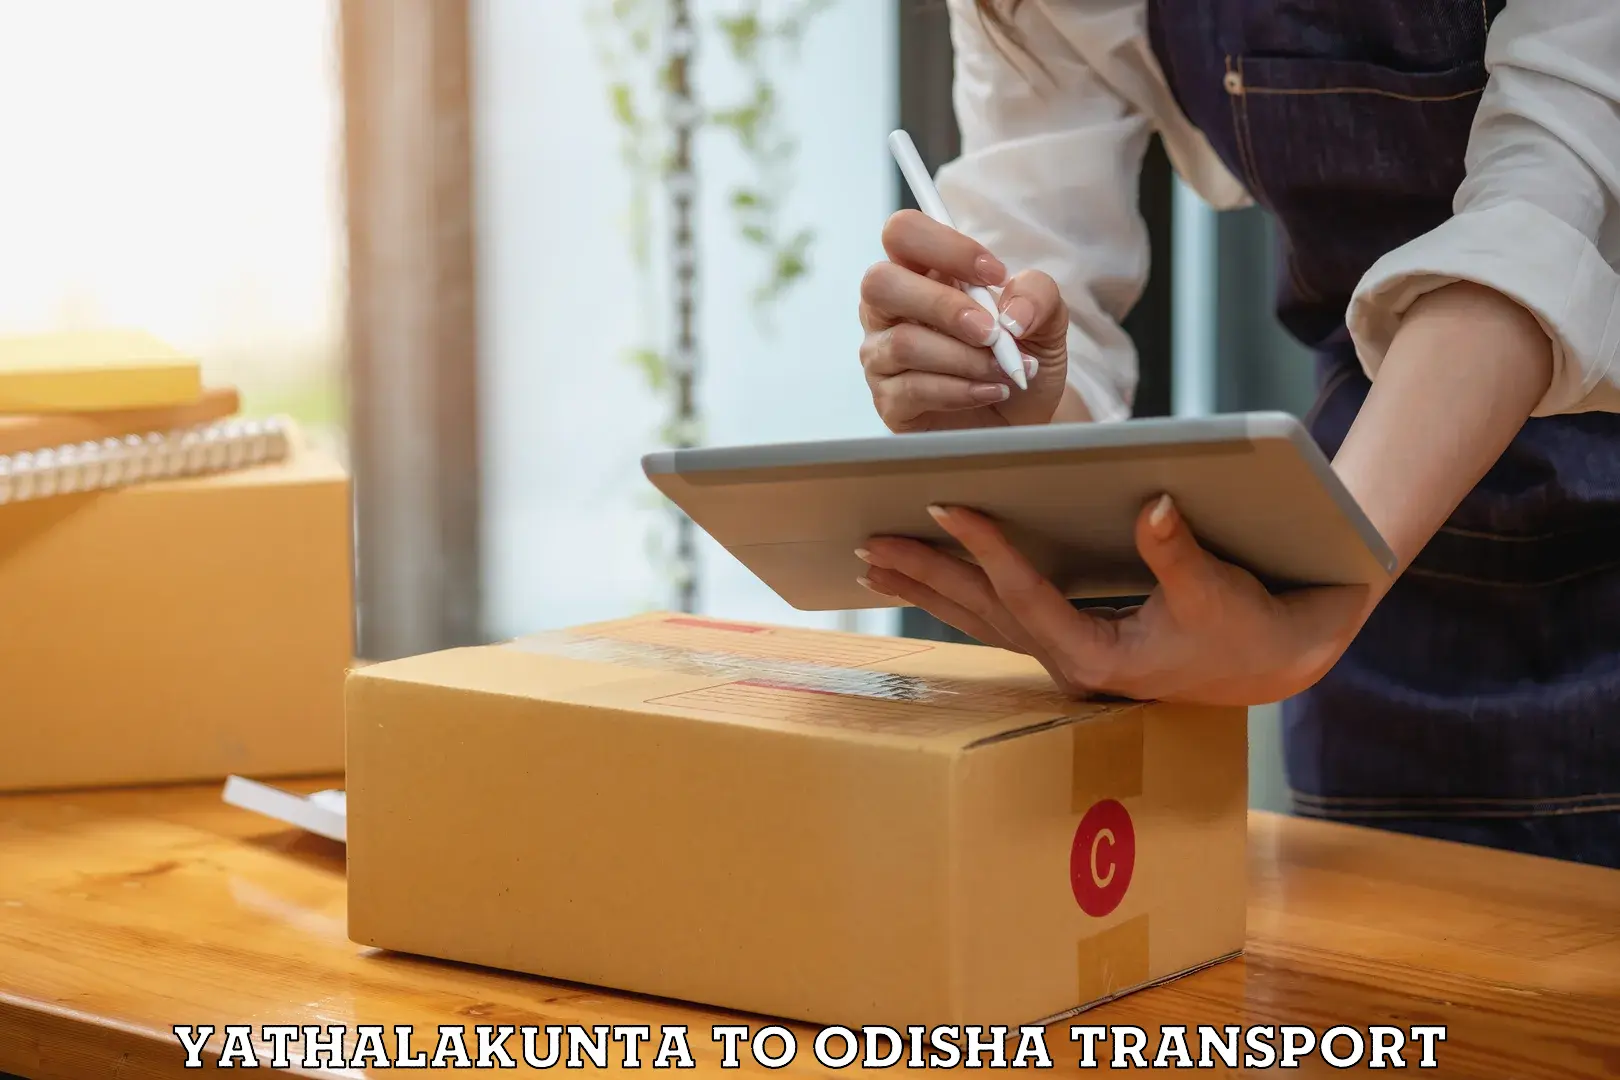 Transport in sharing Yathalakunta to Kakiriguma